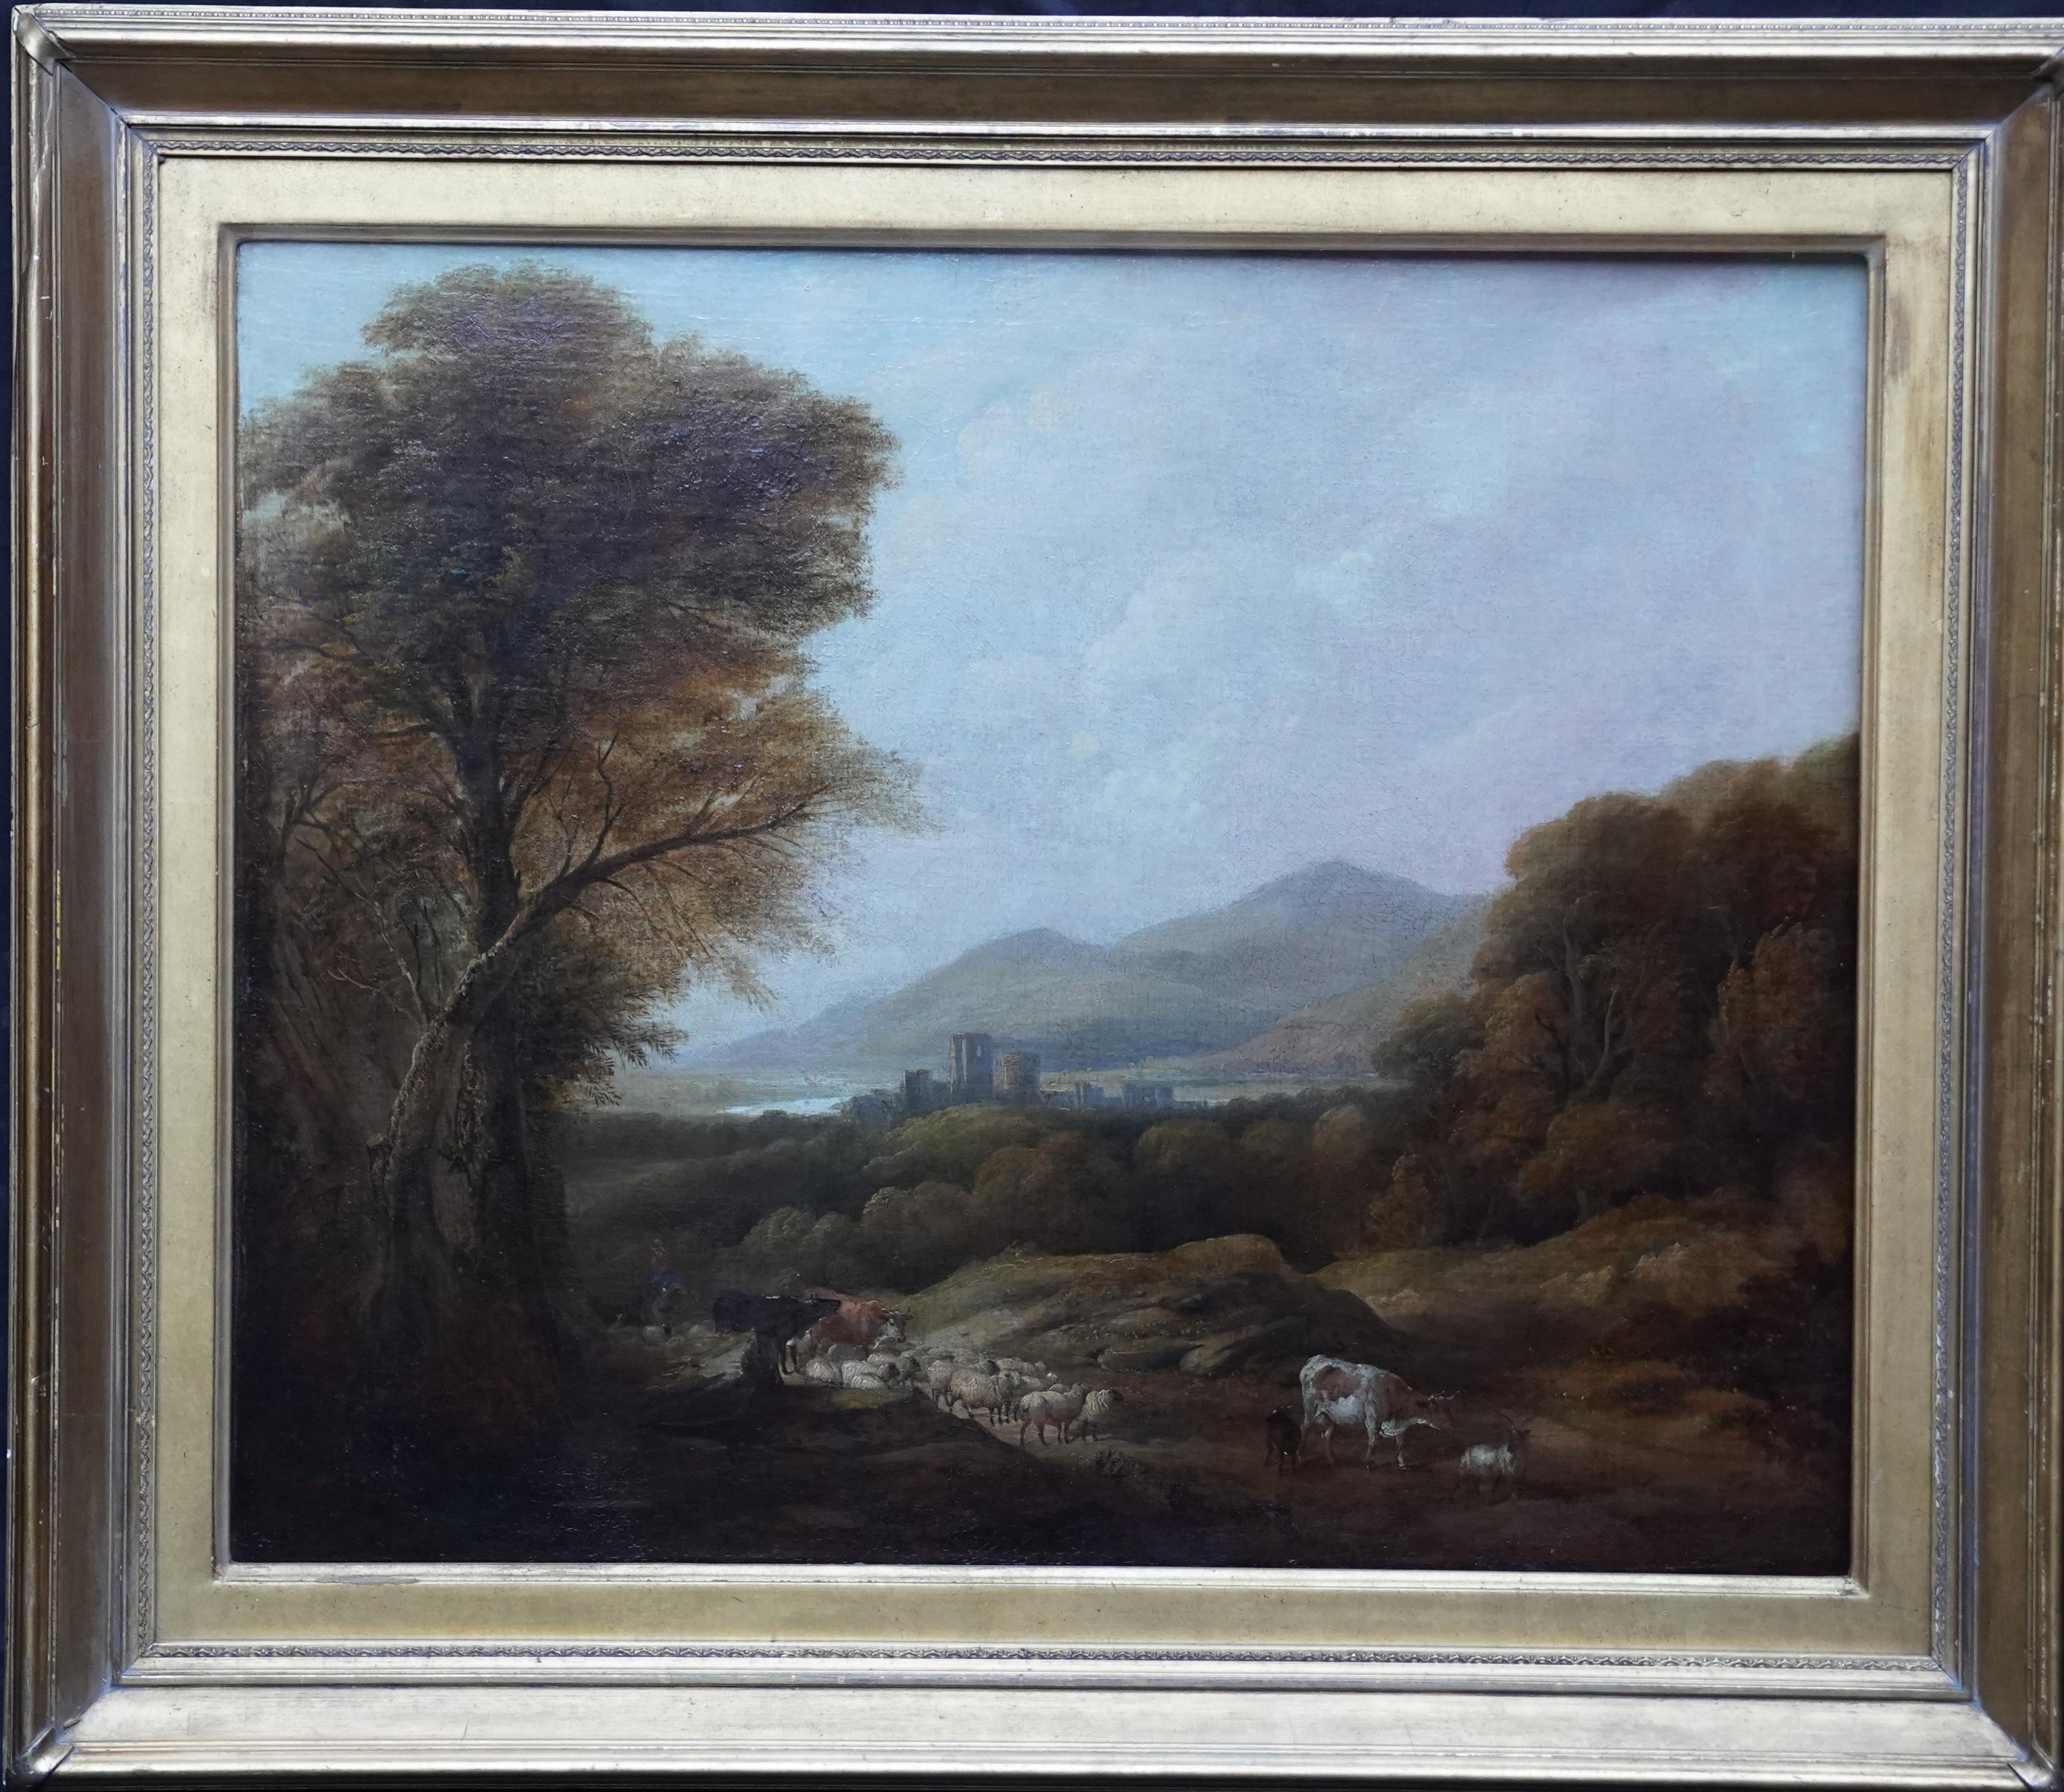 Cattle and Drover in a Landscape - Peinture à l'huile d'un paysage de l'art victorien britannique